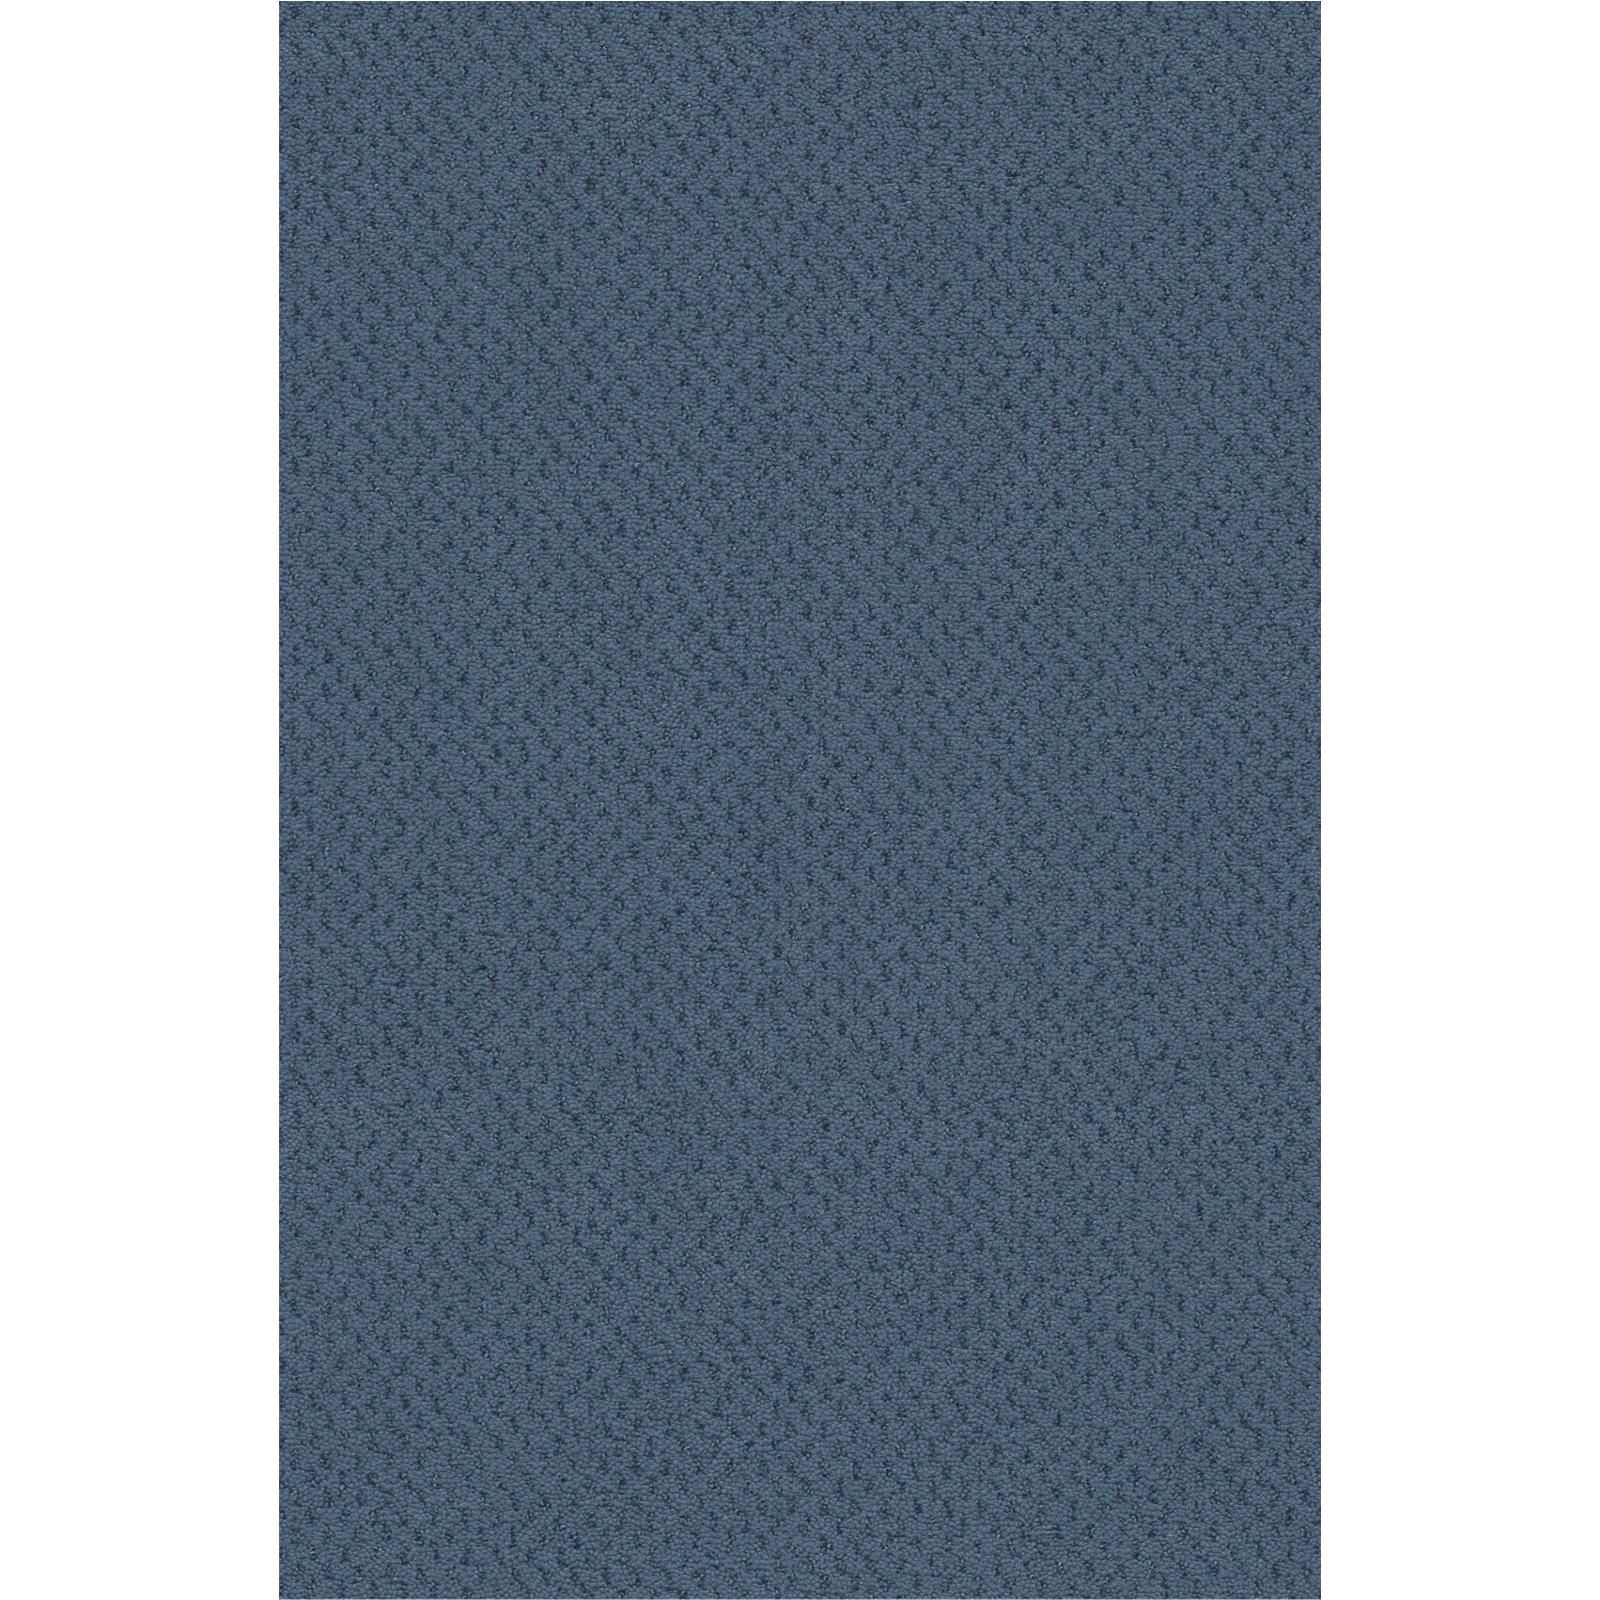 Teppichboden Vorwerk Superior 1071 DACAPO Velours Blau 3Q97 - Rollenbreite 400 cm